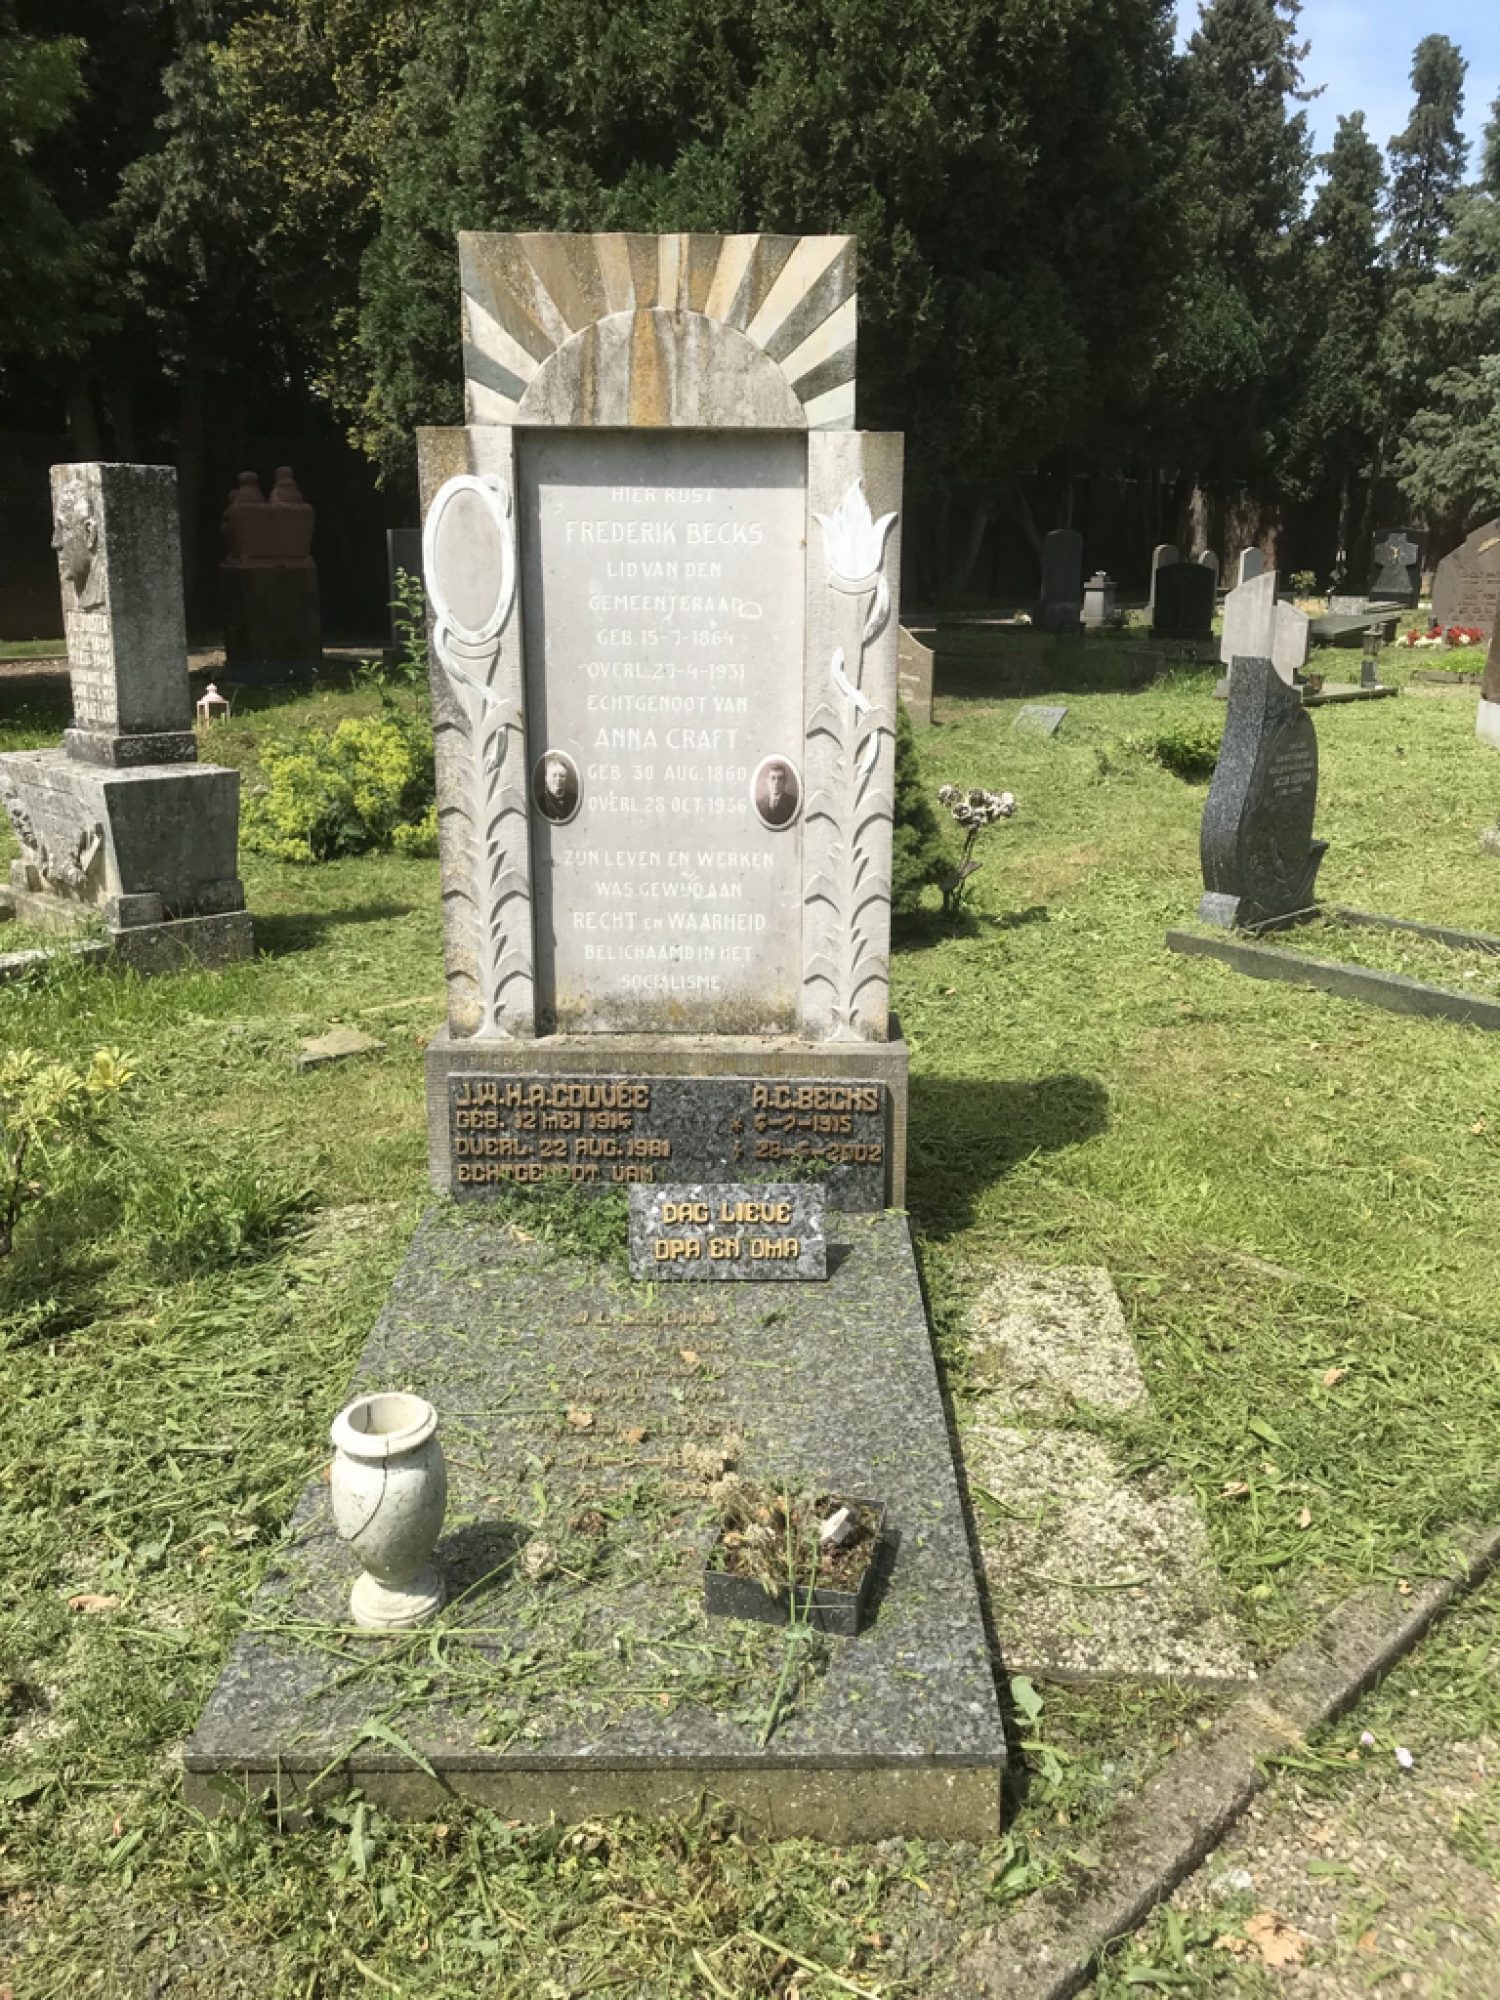 https://limburg.pvda.nl/nieuws/1-mei-2020-dag-van-de-arbeid-een-virtueel-bezoek-aan-vak-aa-in-coronatijd/Het graf van Frederick Becks.